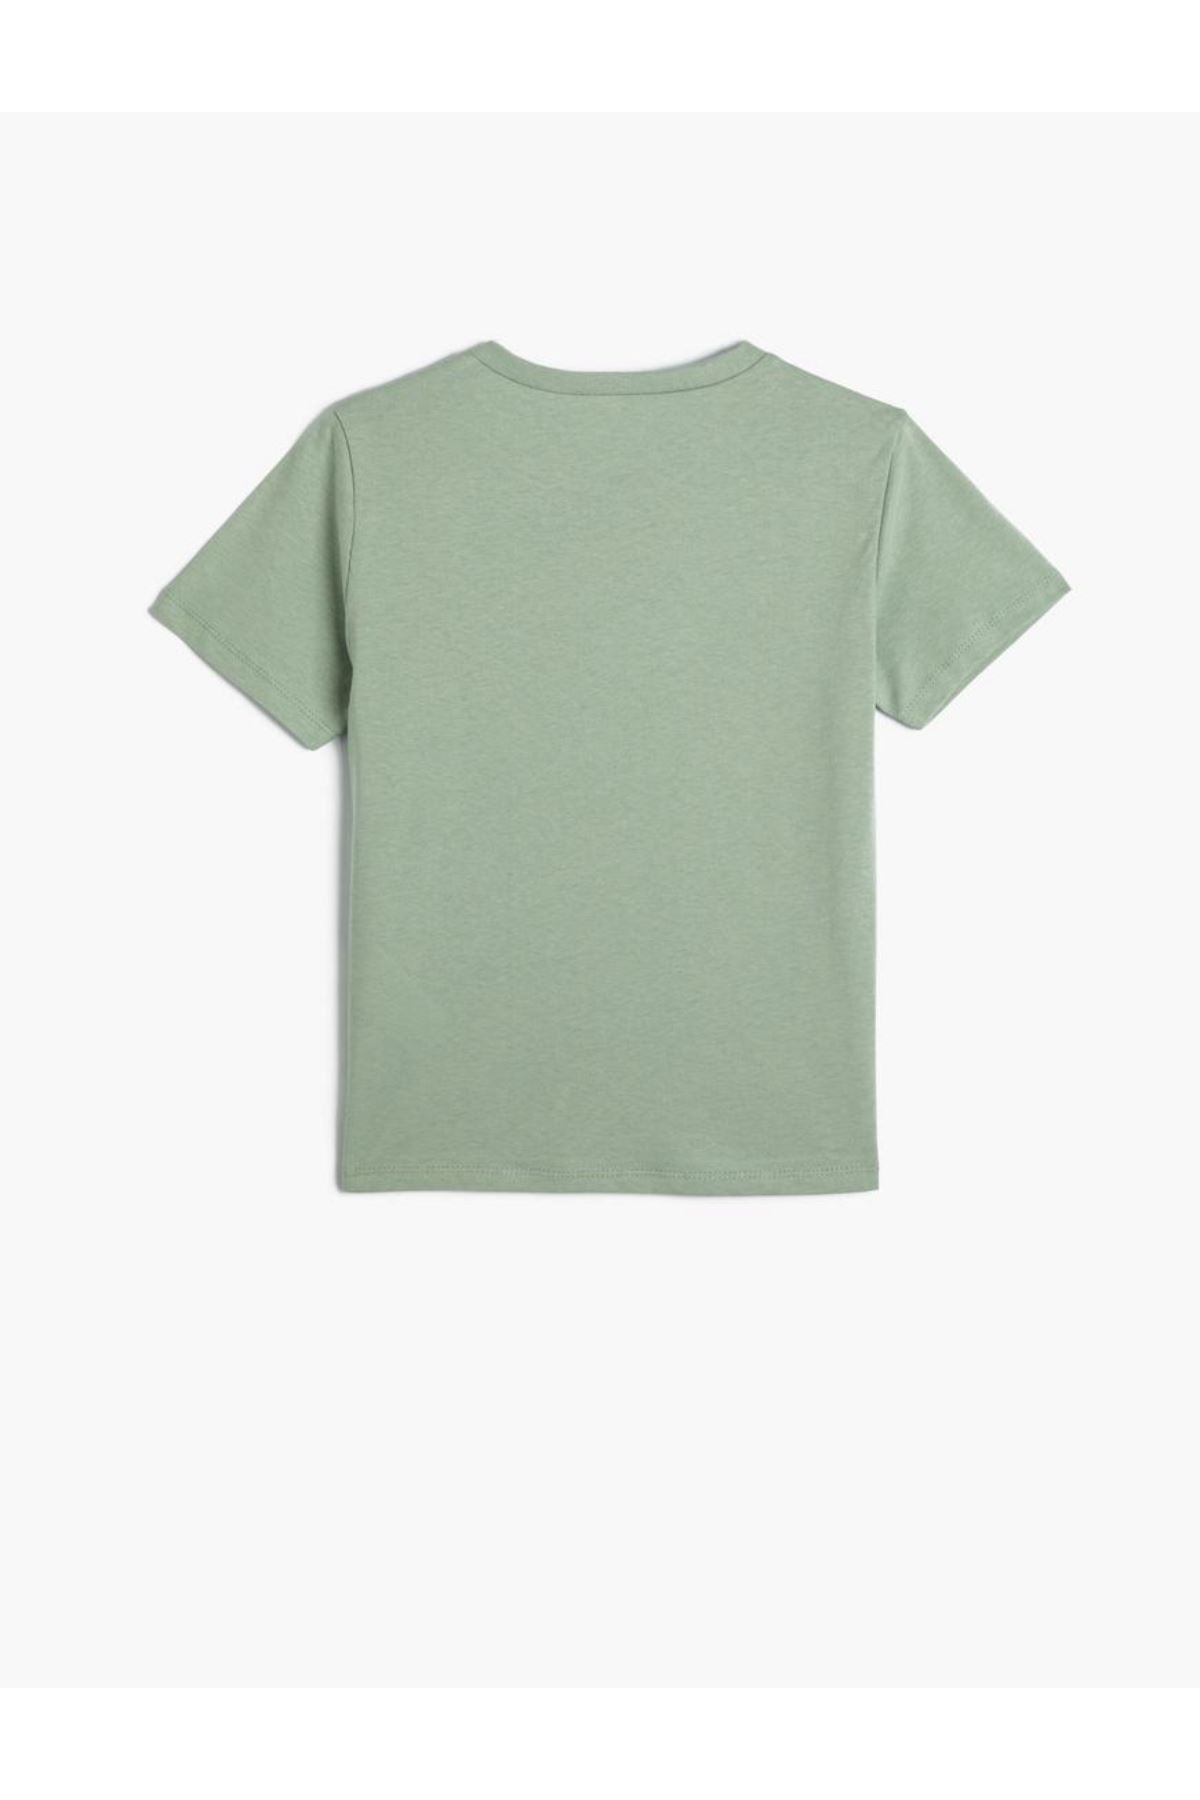 Koton Erkek Çocuk Yeşil Tişört - 4SKB10184TK